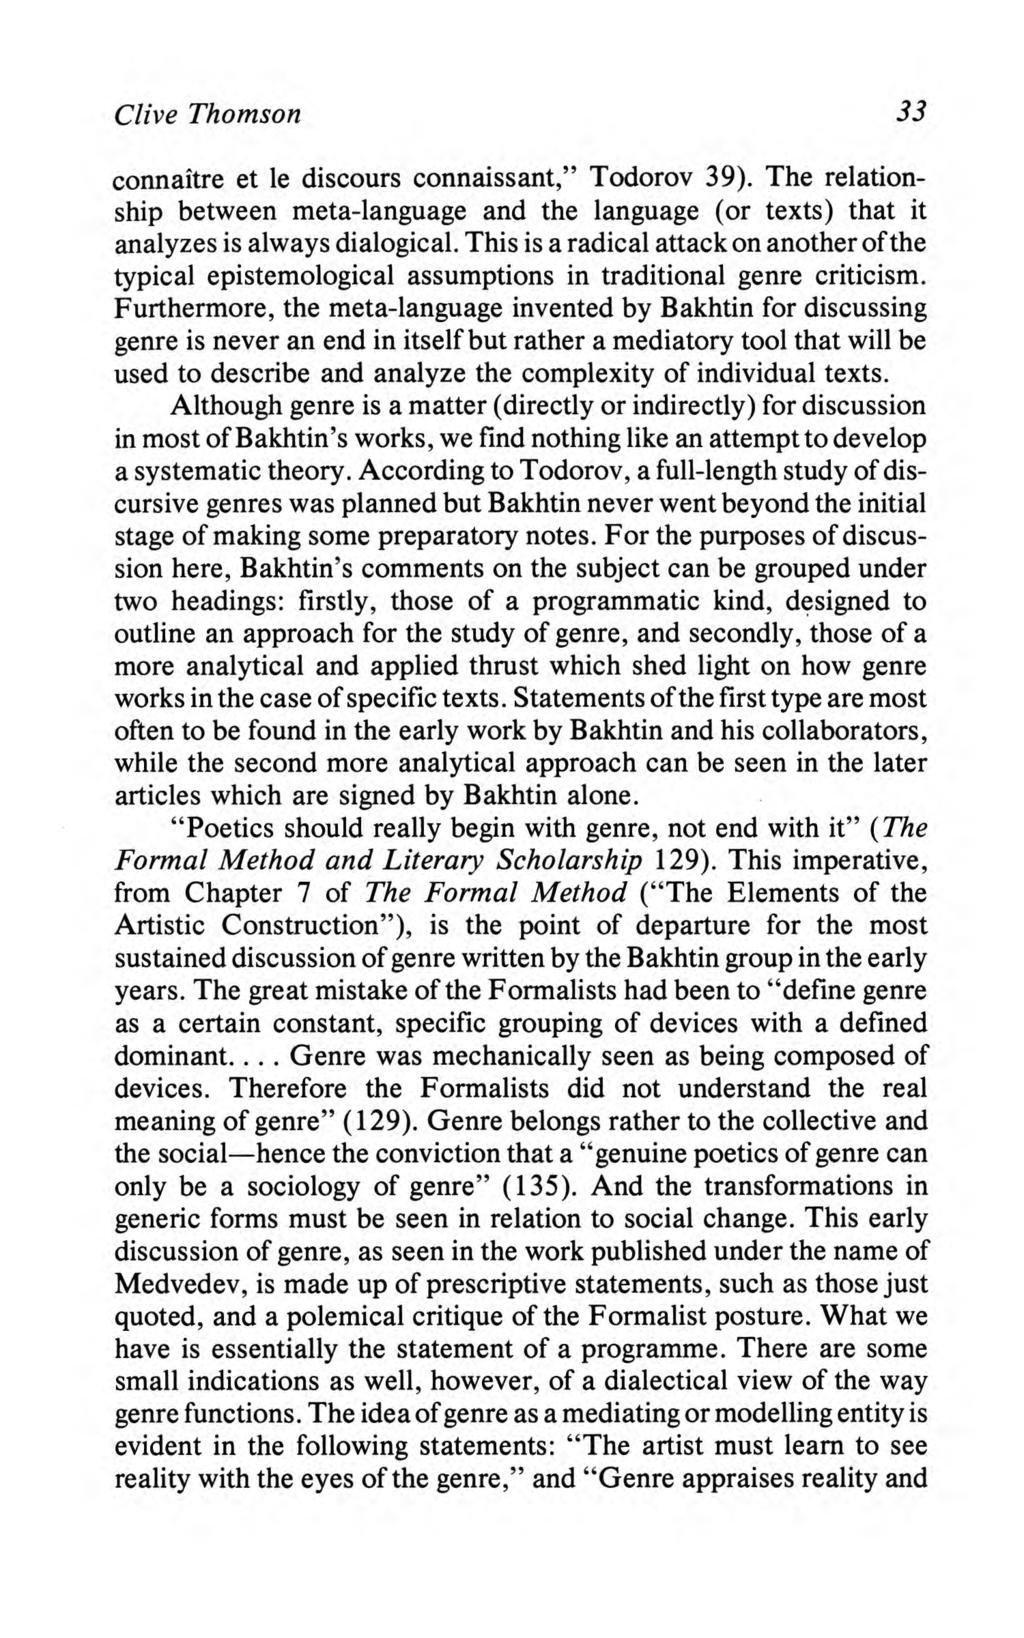 Thomson: Bakhtin's "Theory" of Genre Clive Thomson 33 connaitre et le discours connaissant," Todorov 39).